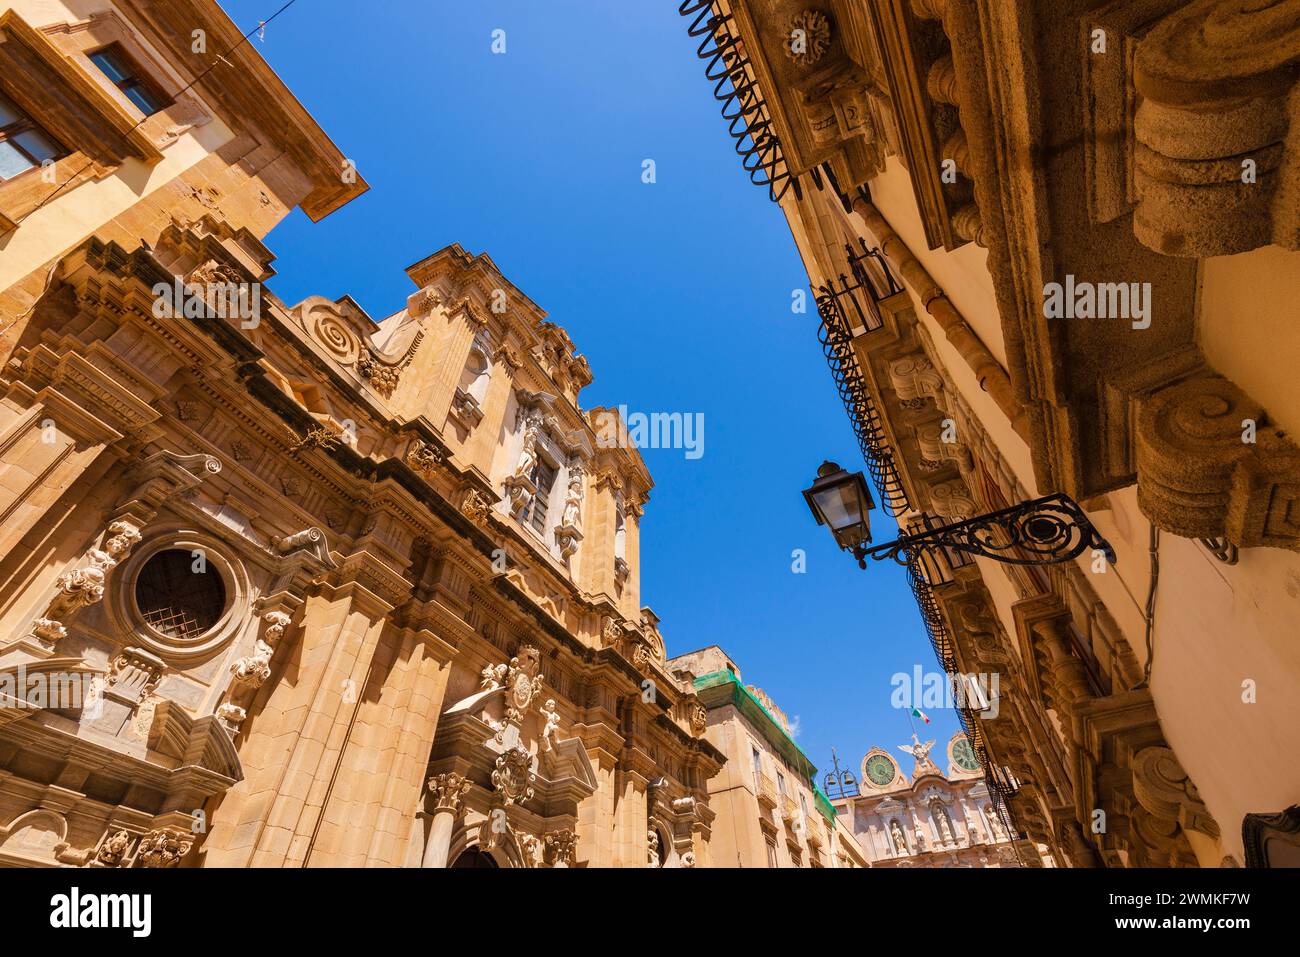 Ammira l'ornata opera in pietra dei vecchi edifici della storica città vecchia di Trapani; Trapani, Sicilia, Italia Foto Stock